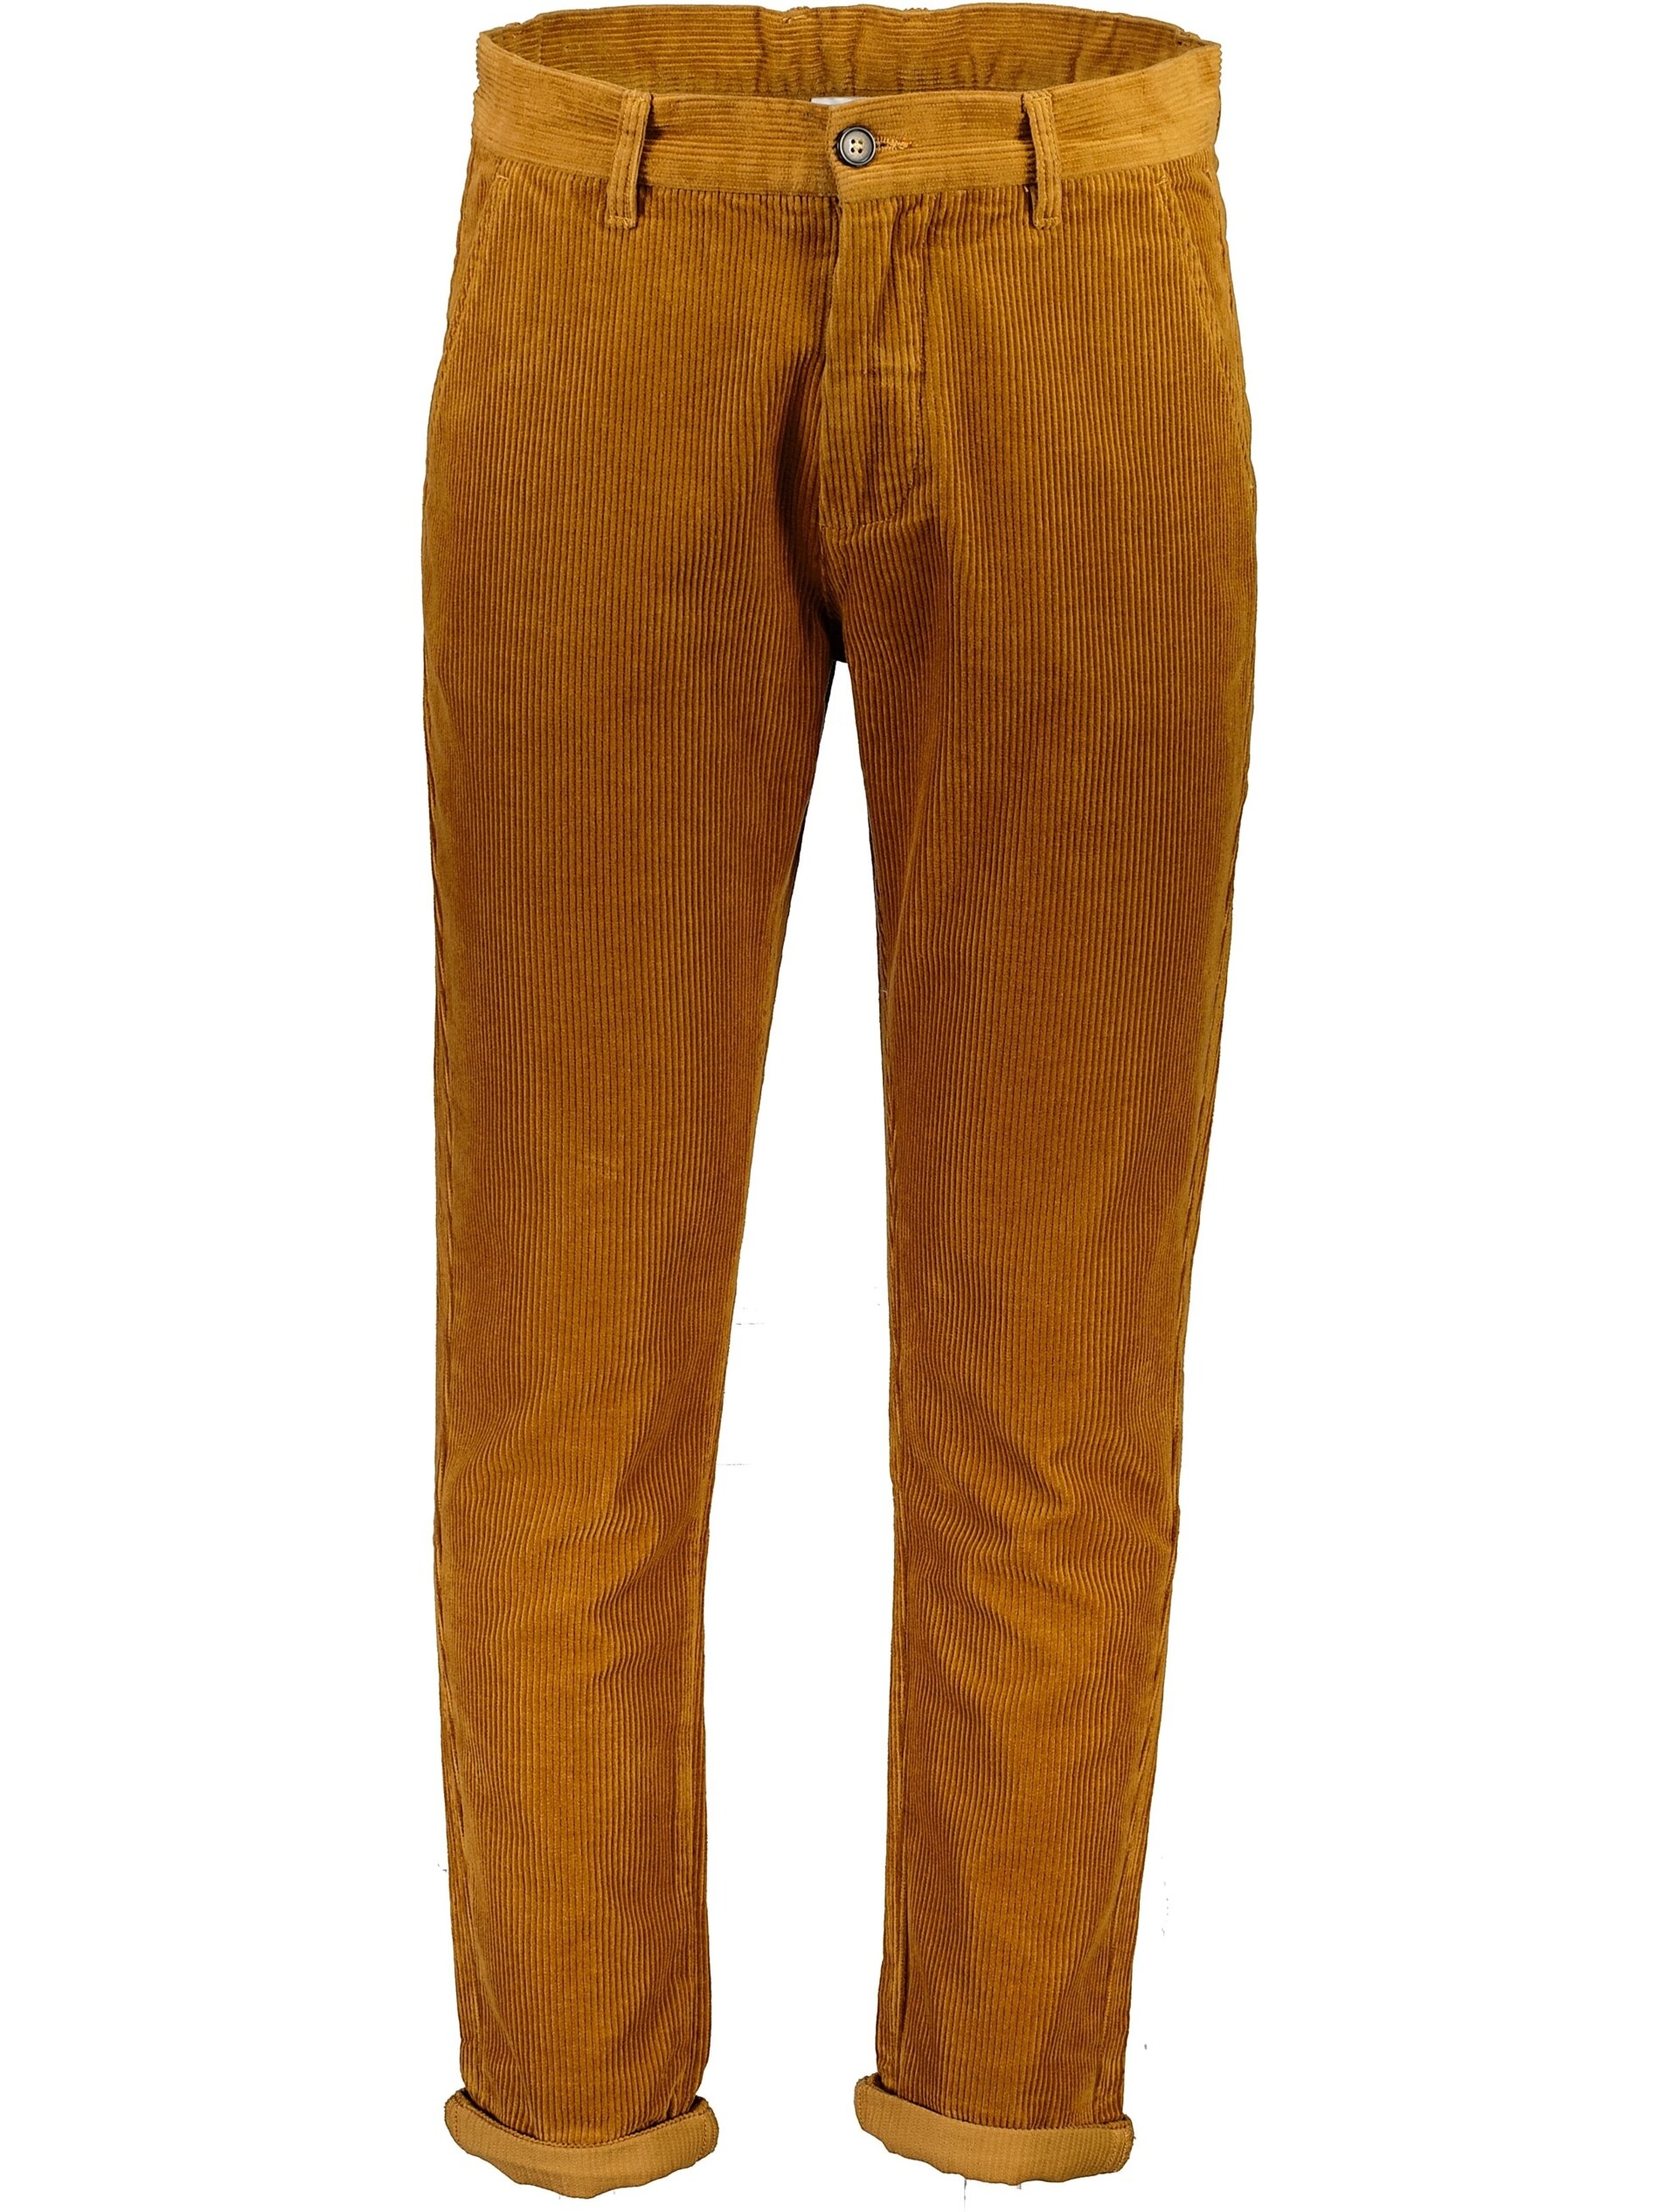 Lindbergh Corduroy trousers brown / lt brown 324